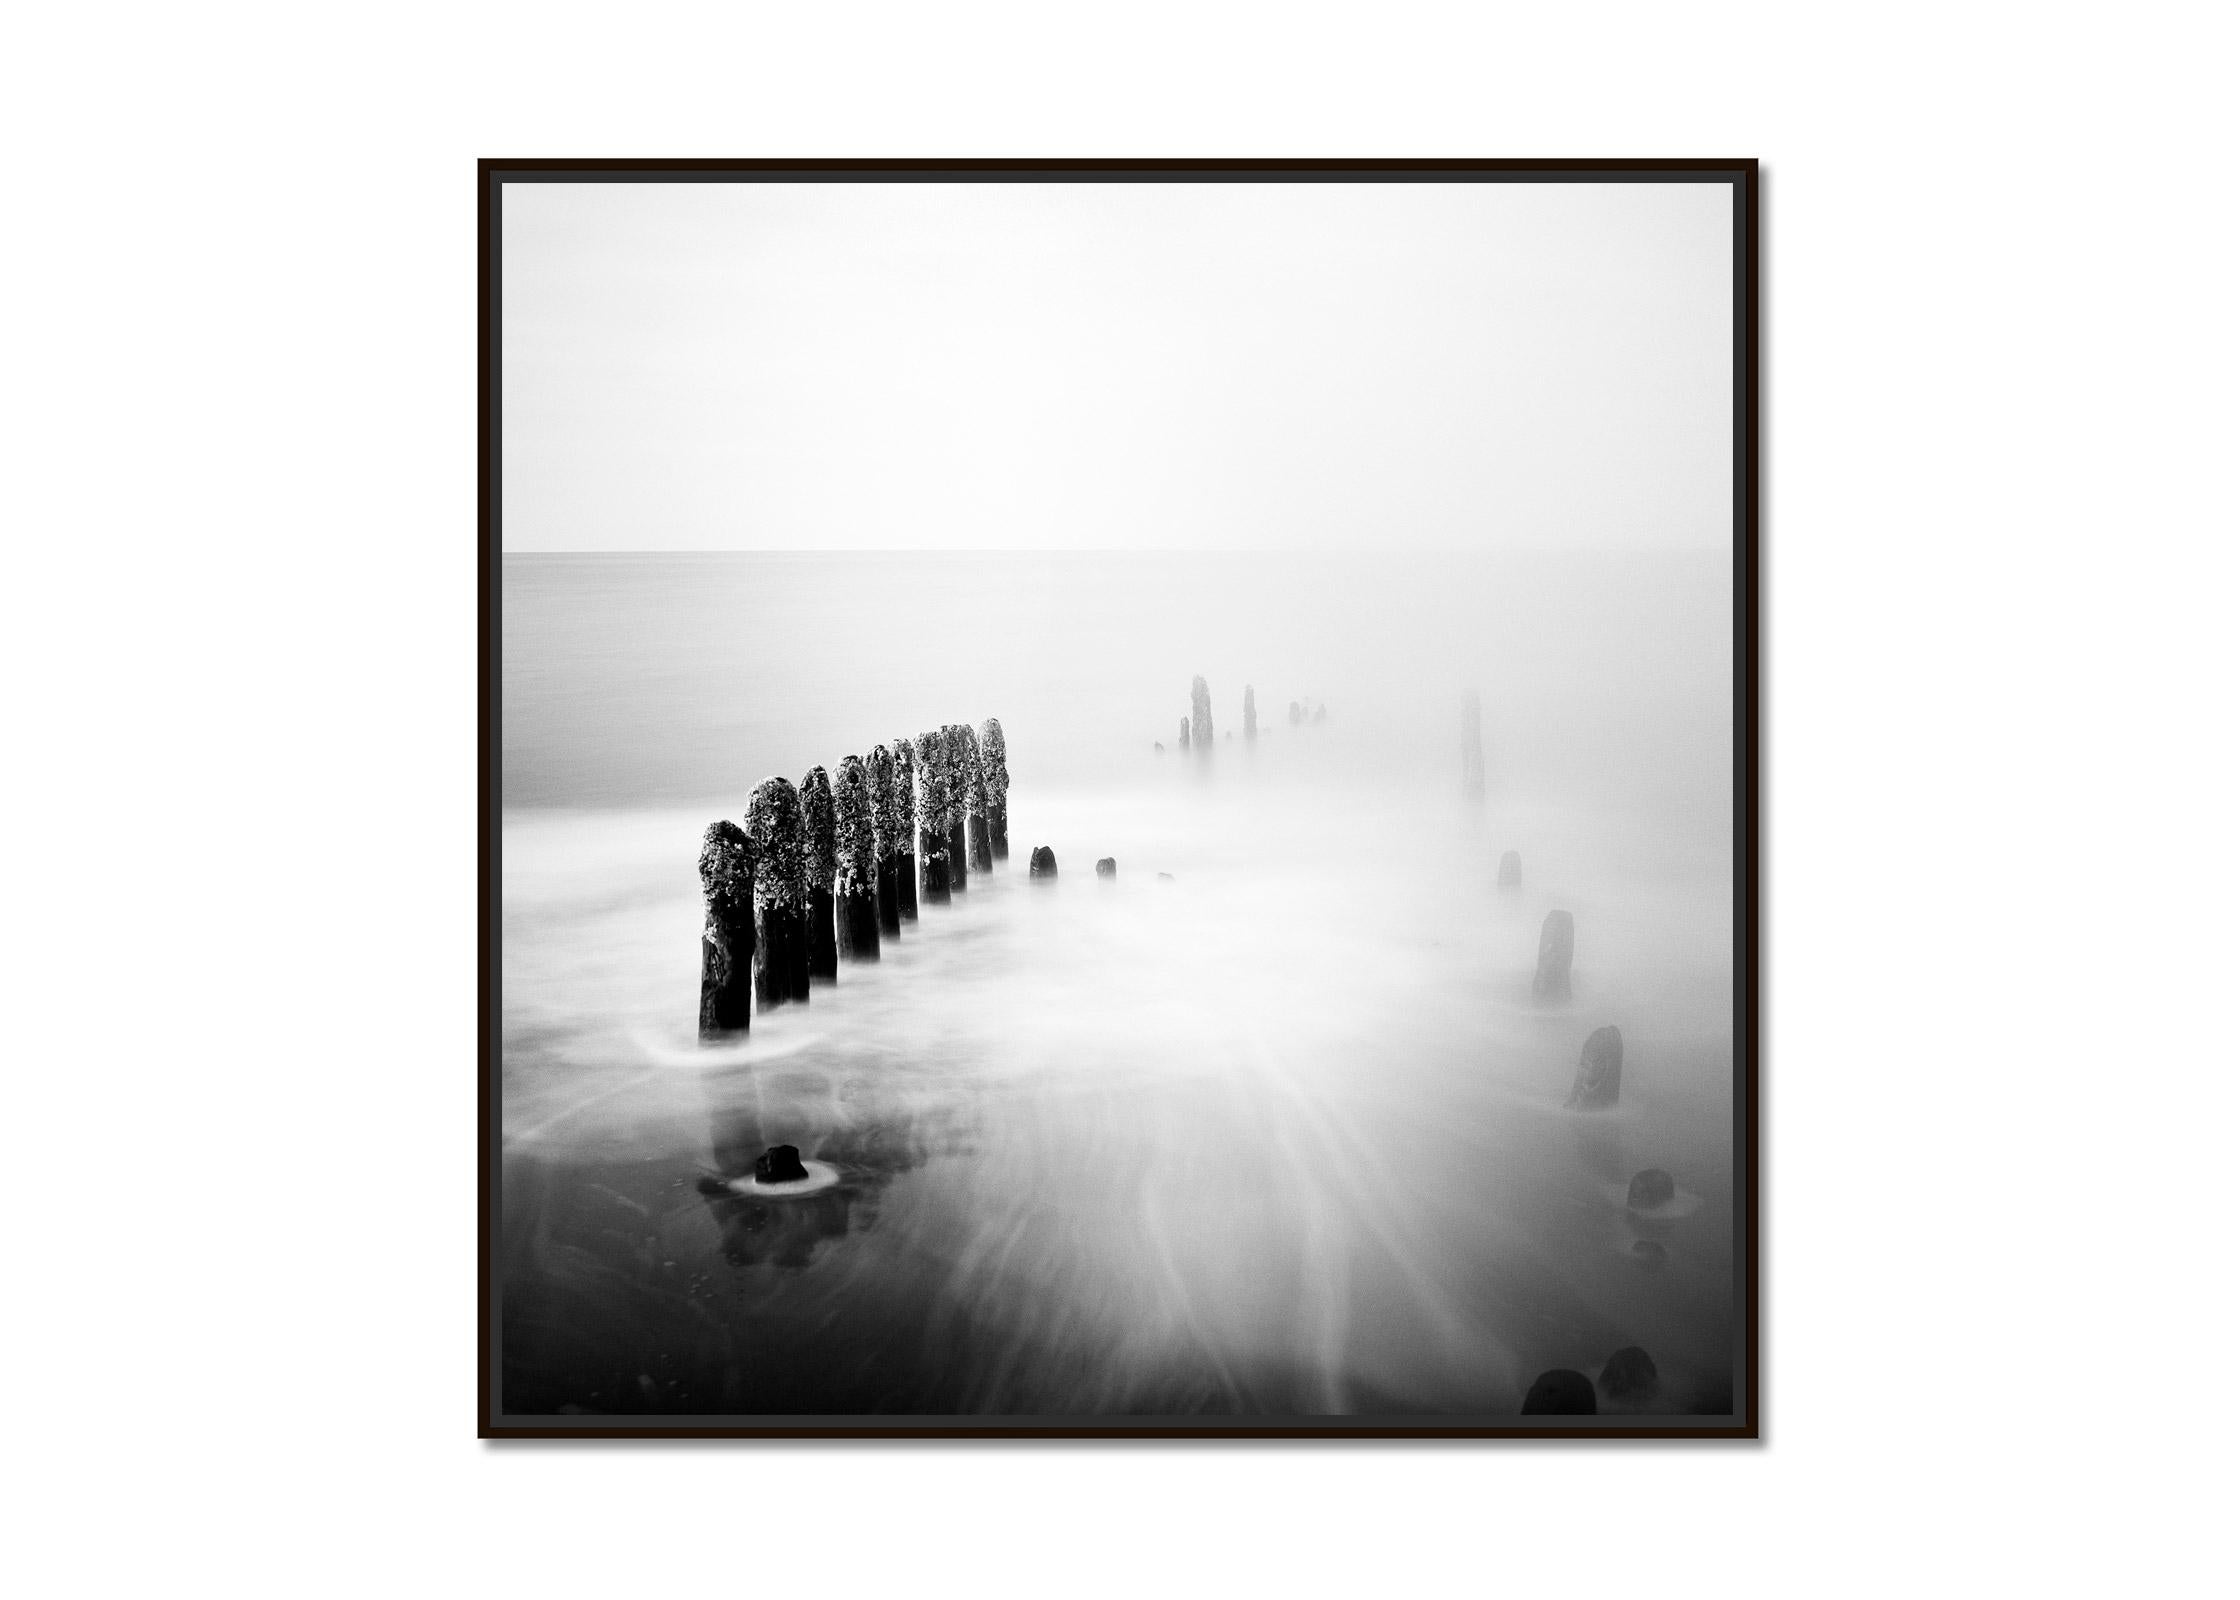 Le temps des asperges, Ruegen, Allemagne, minimaliste, impression d'art de paysage en noir et blanc - Photograph de Gerald Berghammer